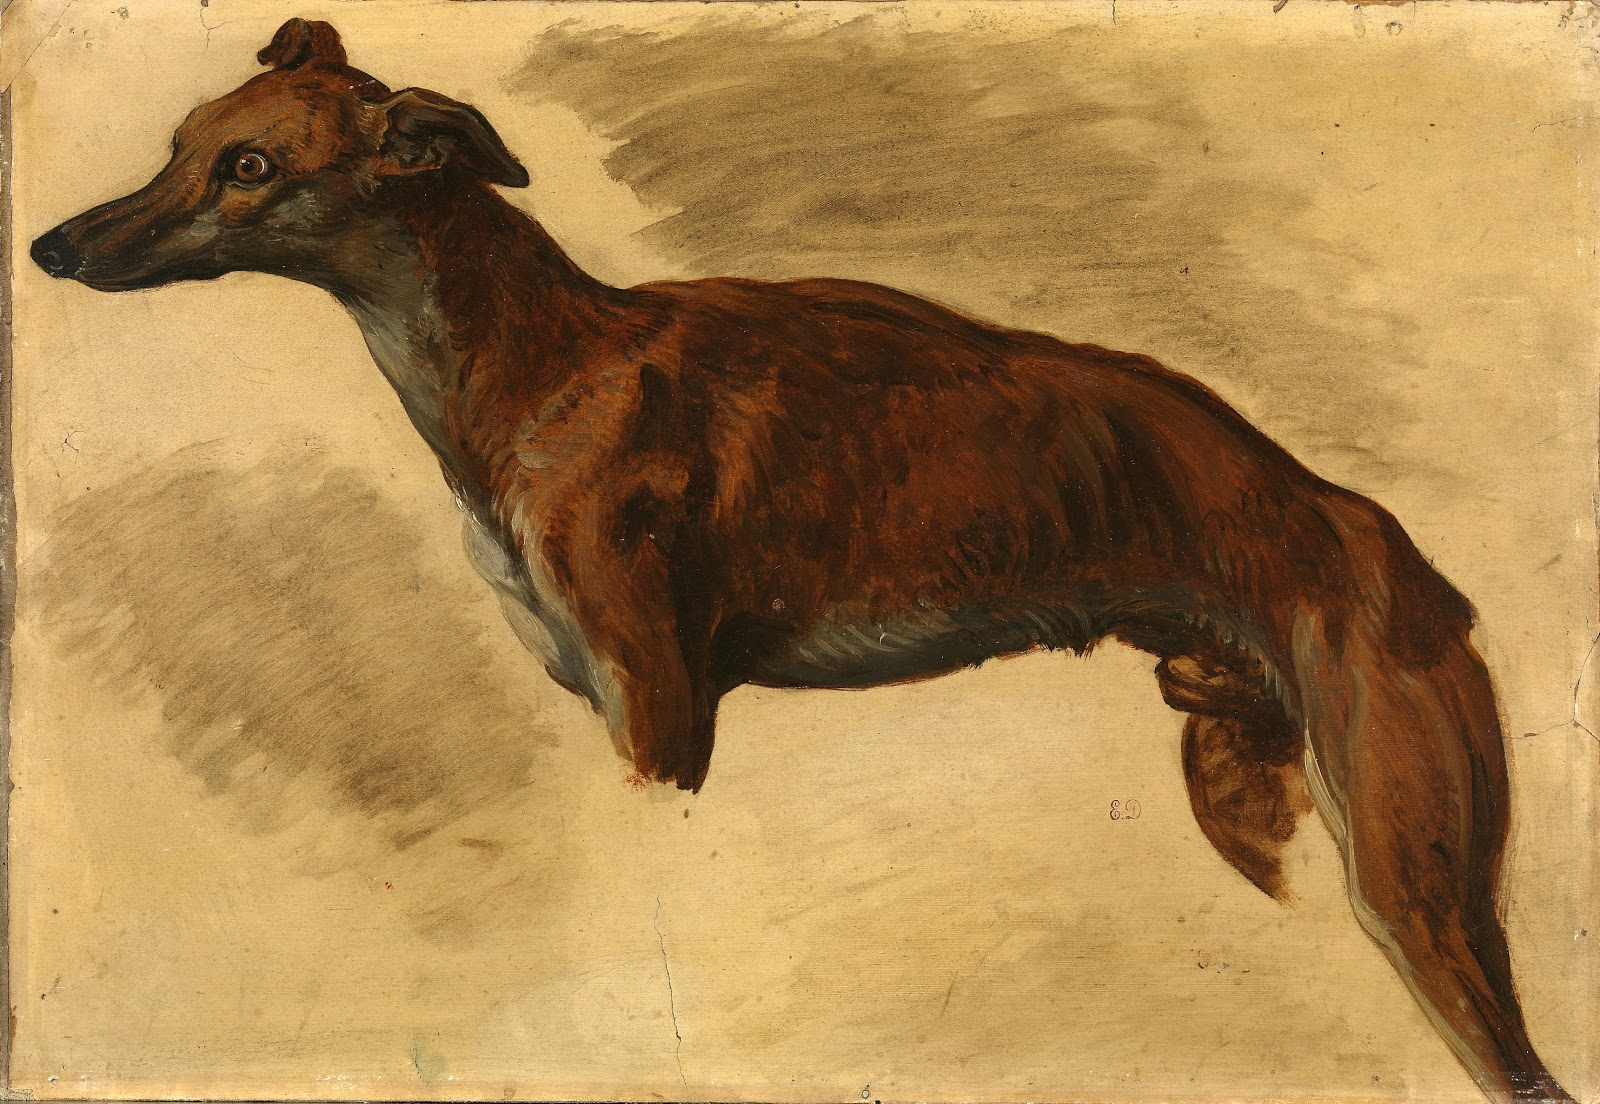 Eugene+Delacroix-1798-1863 (168).jpg